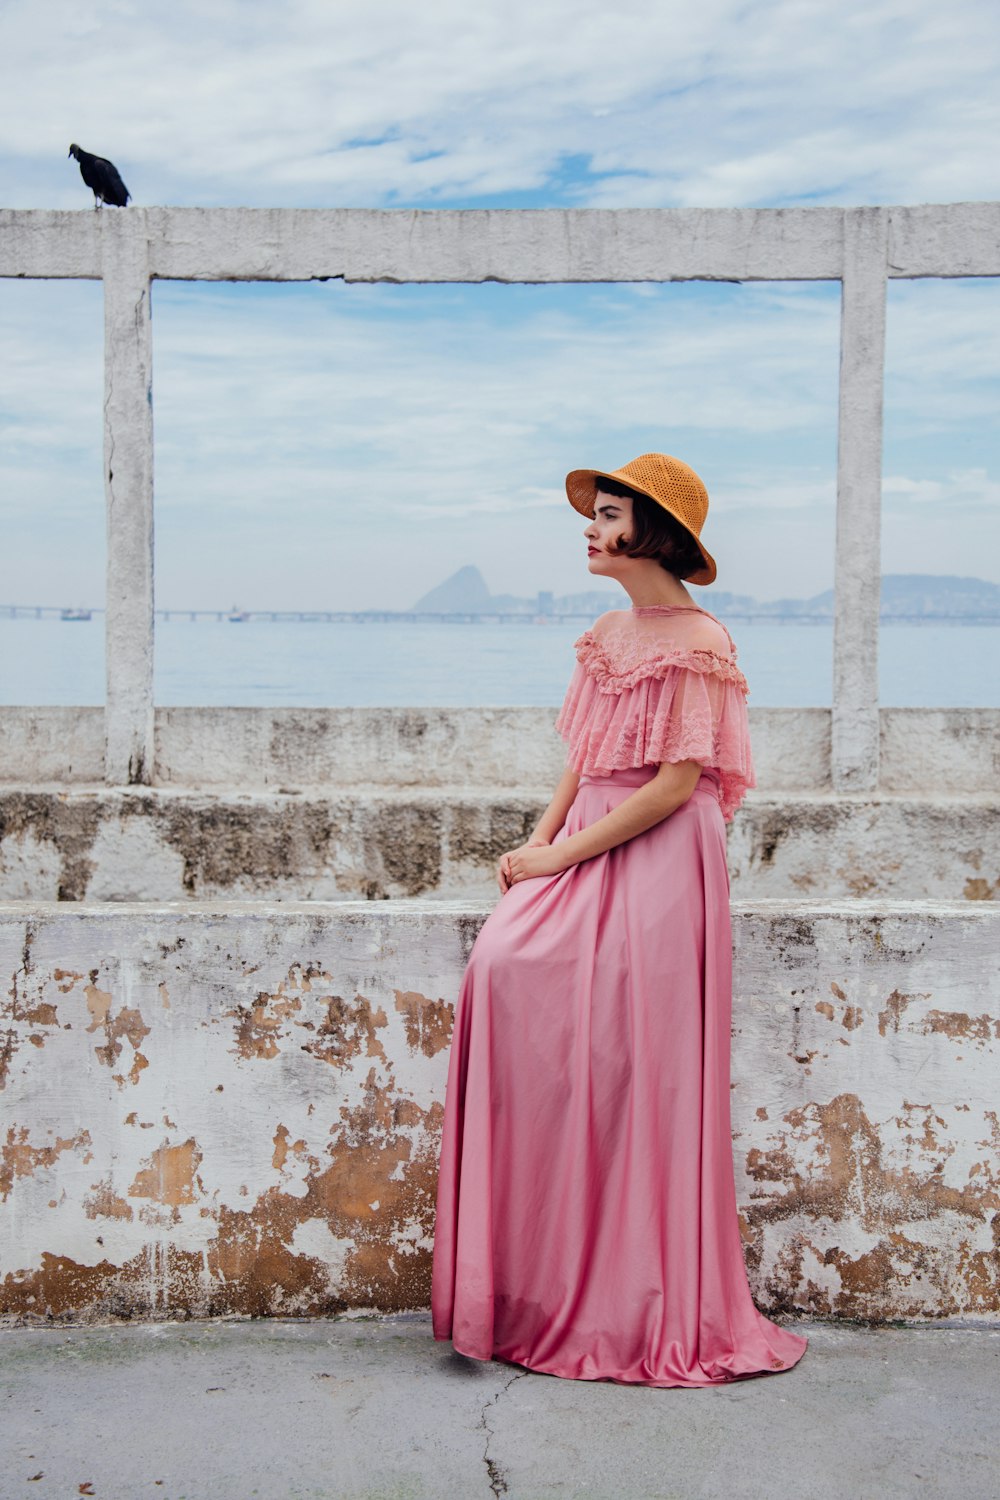 Frau in rosa Kleid steht neben weißer Wand